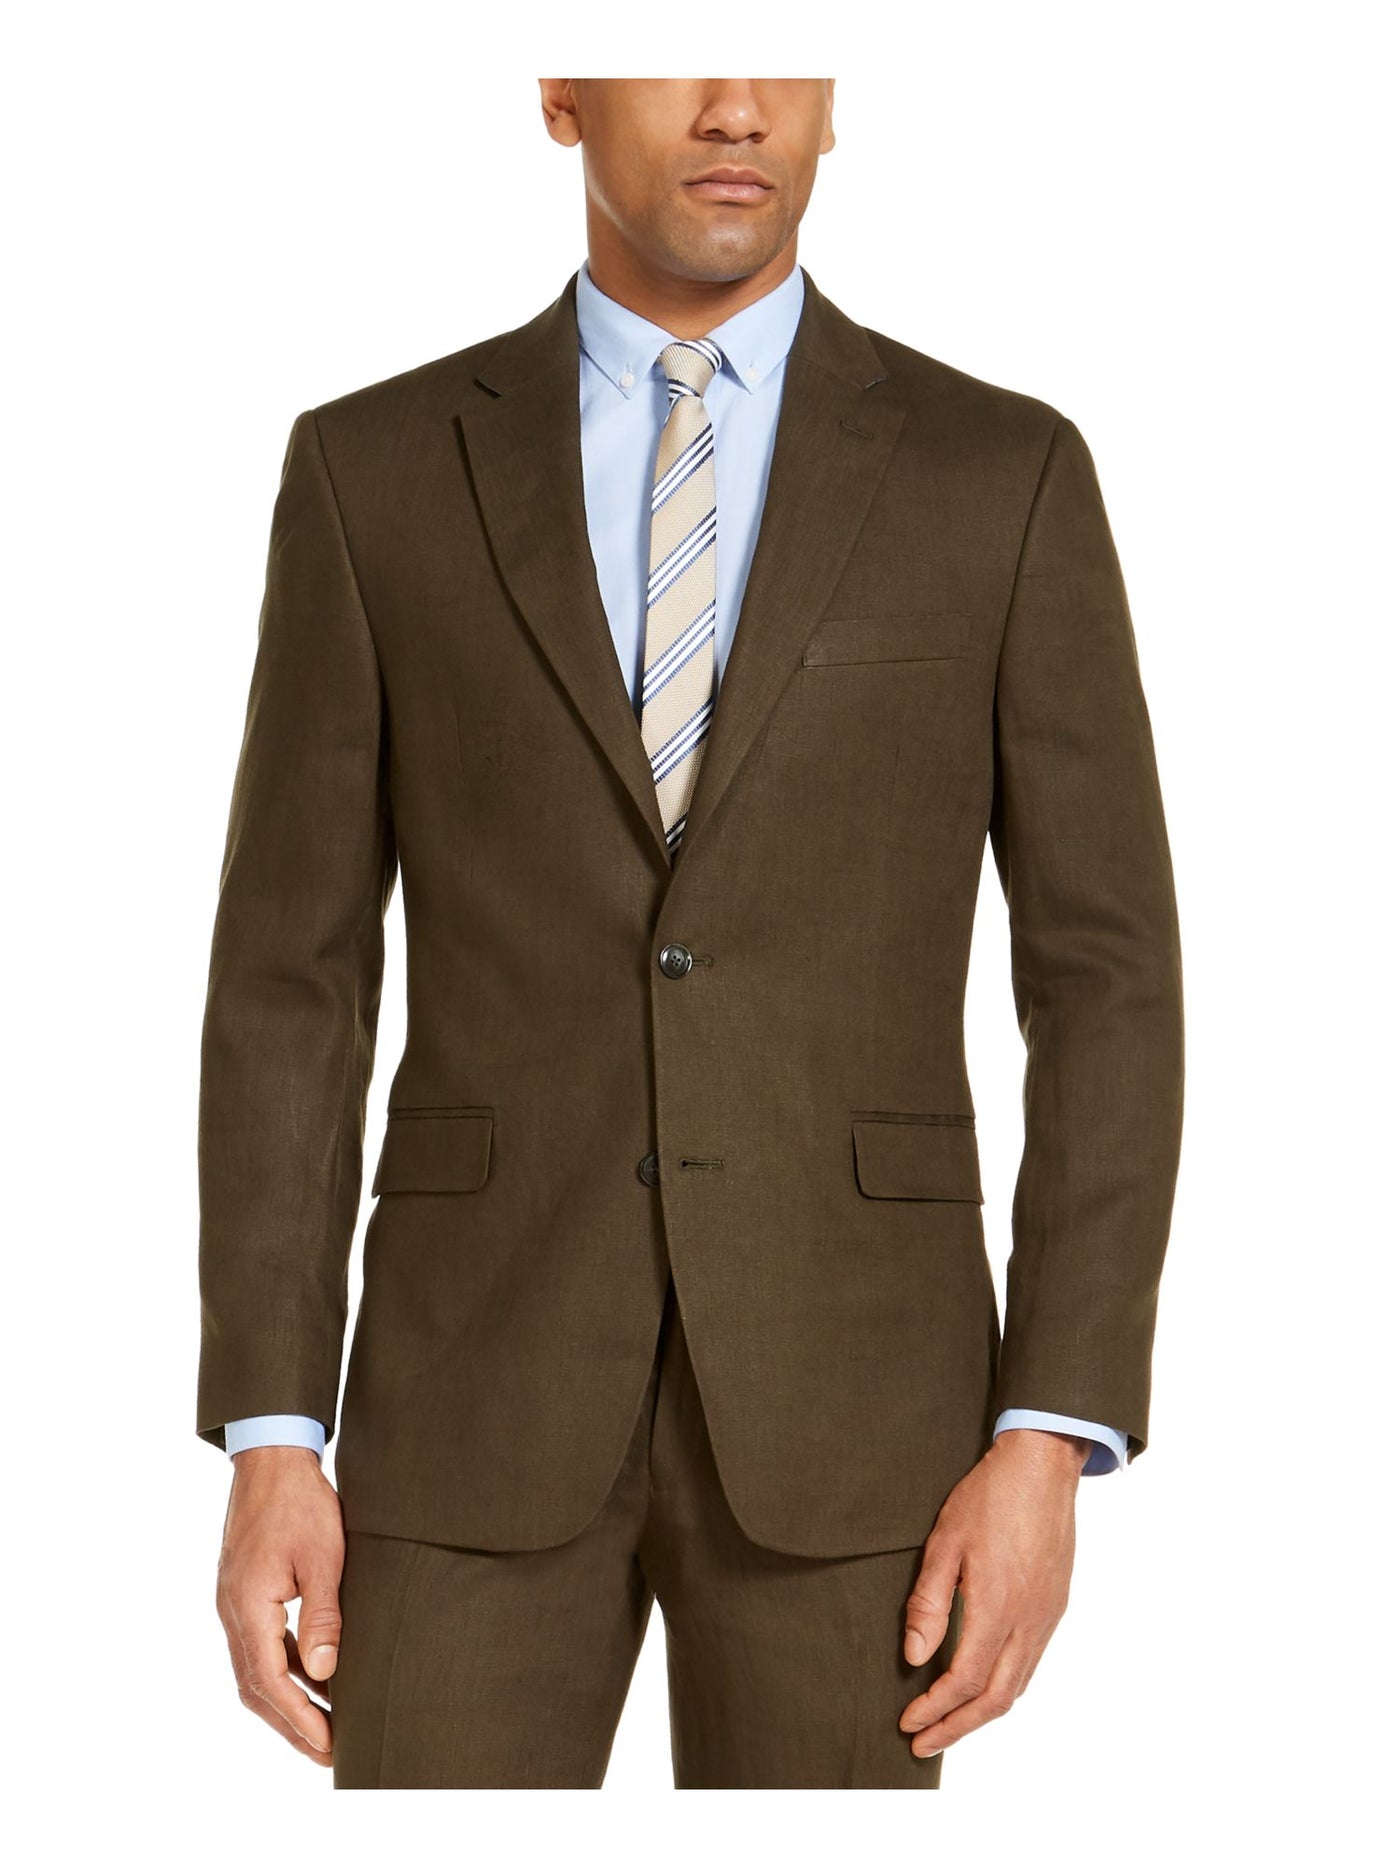 TOMMY HILFIGER Mens Green Lined Regular Fit Suit Separate Blazer Jacket 46L